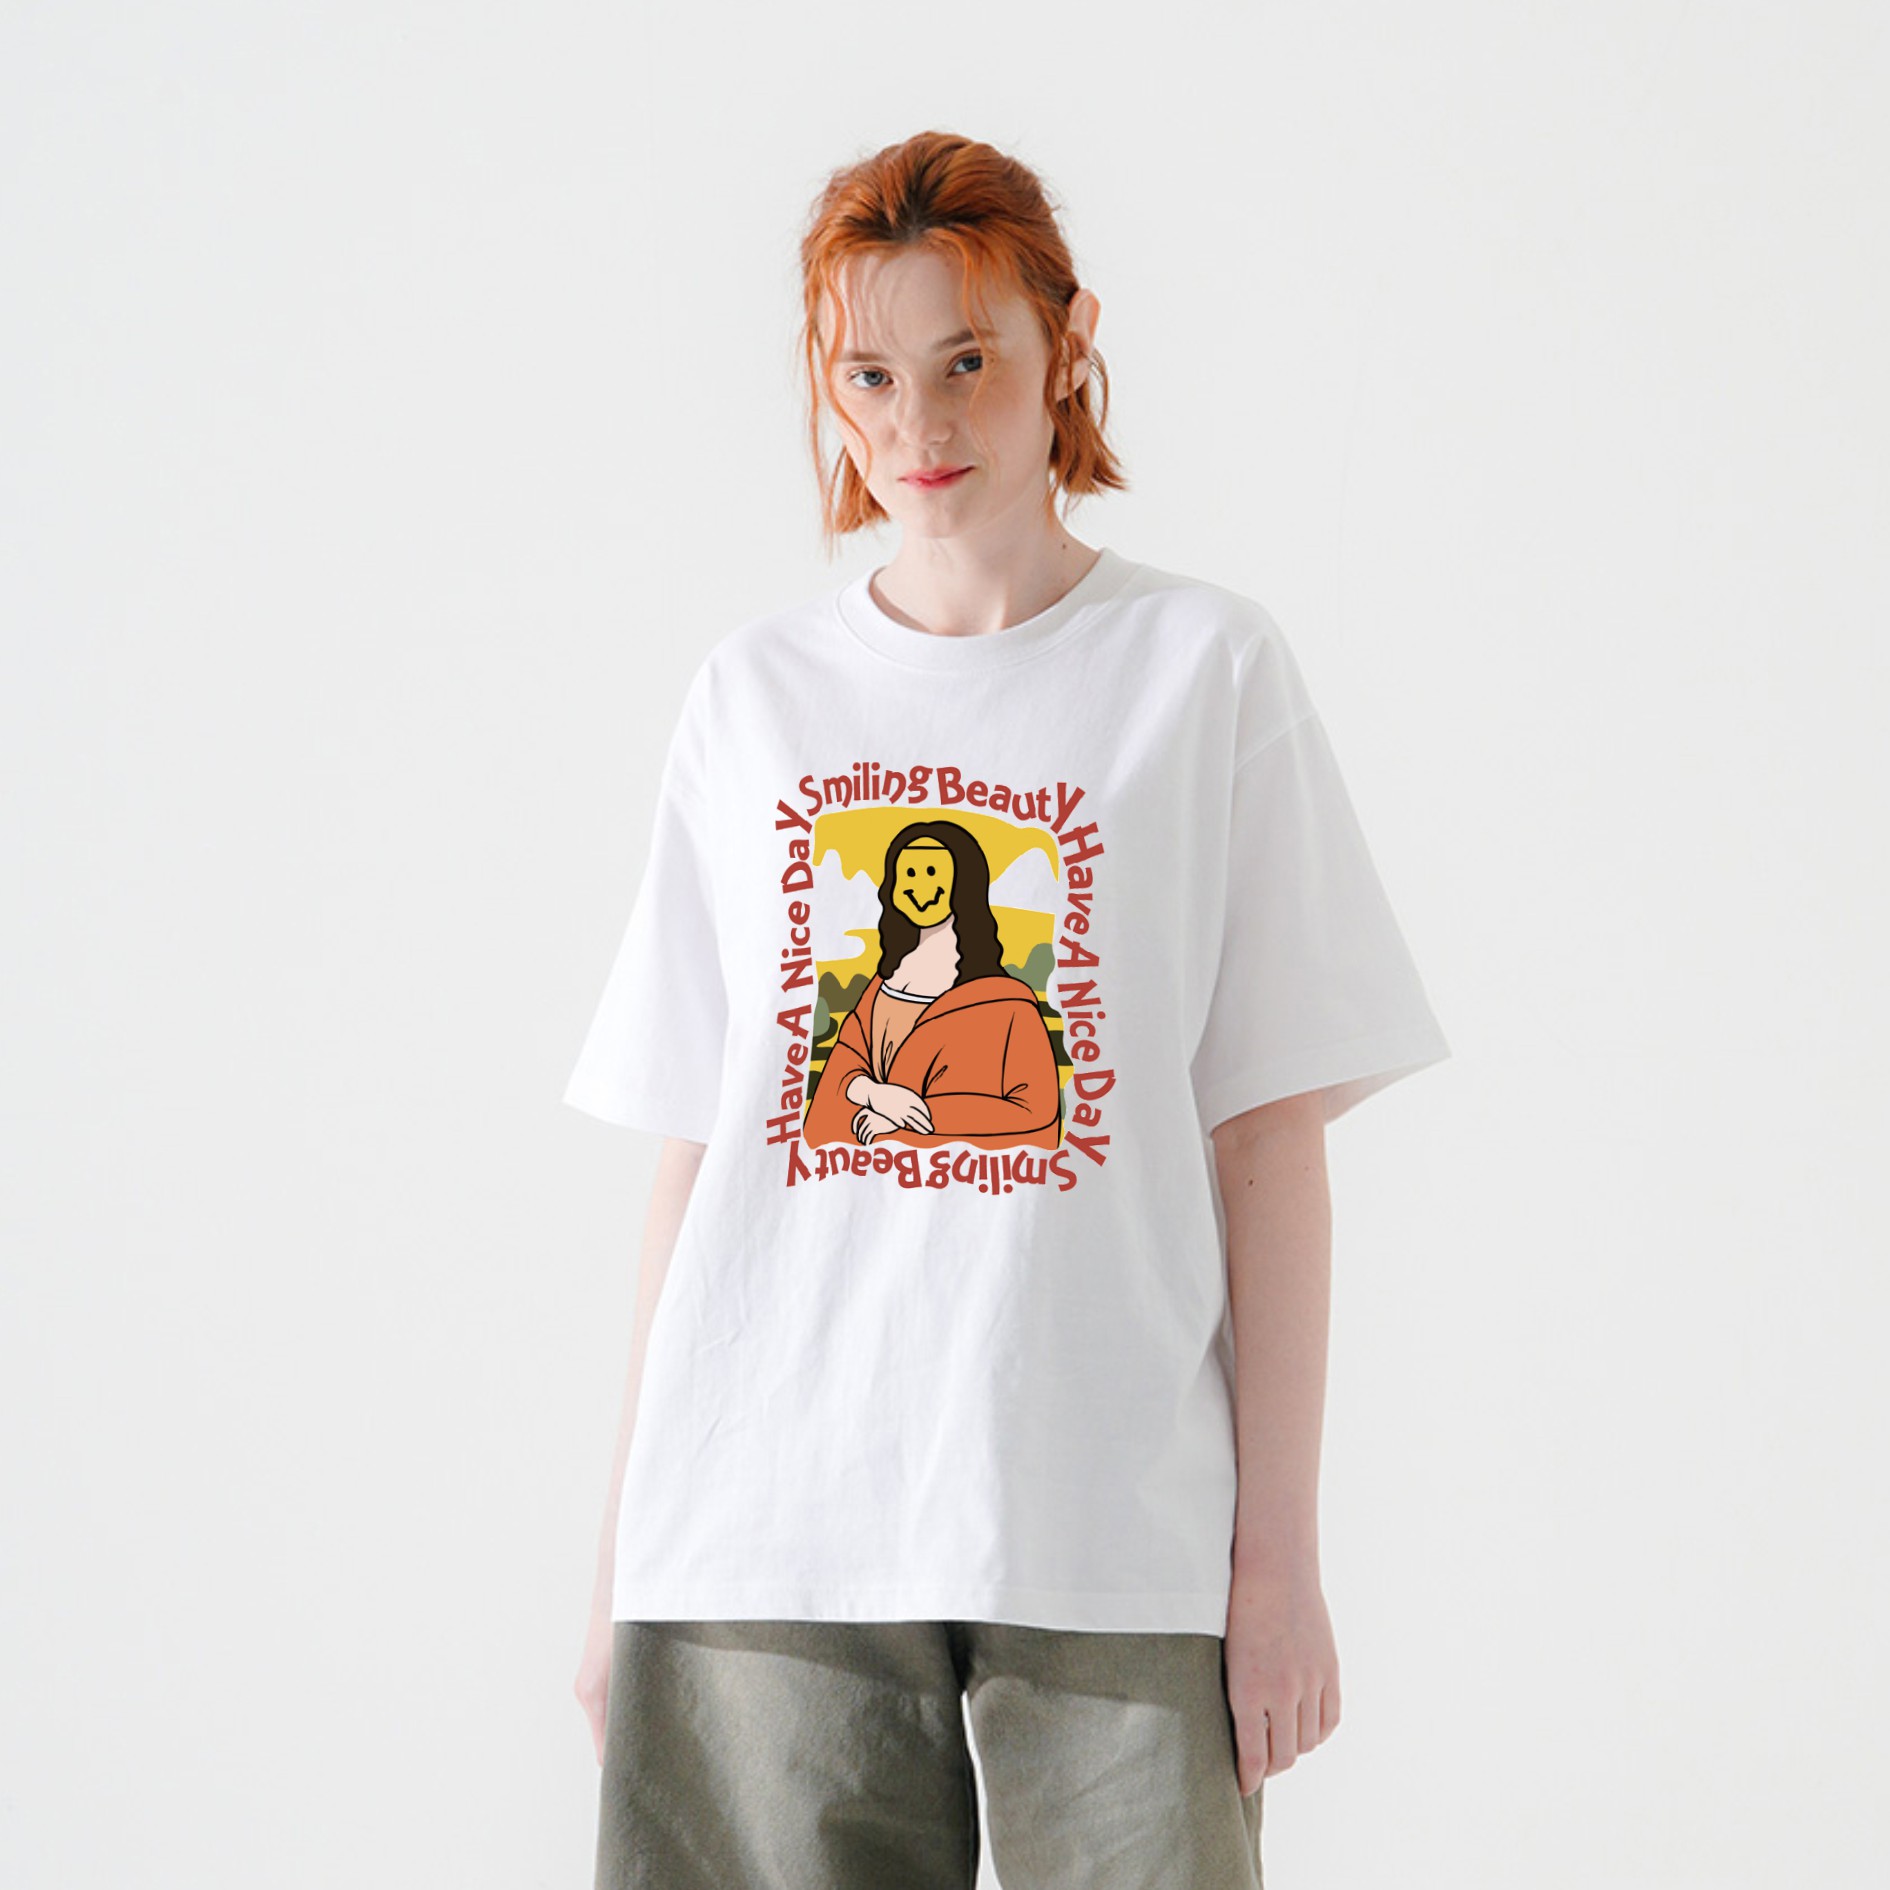 DAOZ原创潮牌街头趣味卡通笑脸蒙娜丽莎印花男女宽松情侣短袖T恤